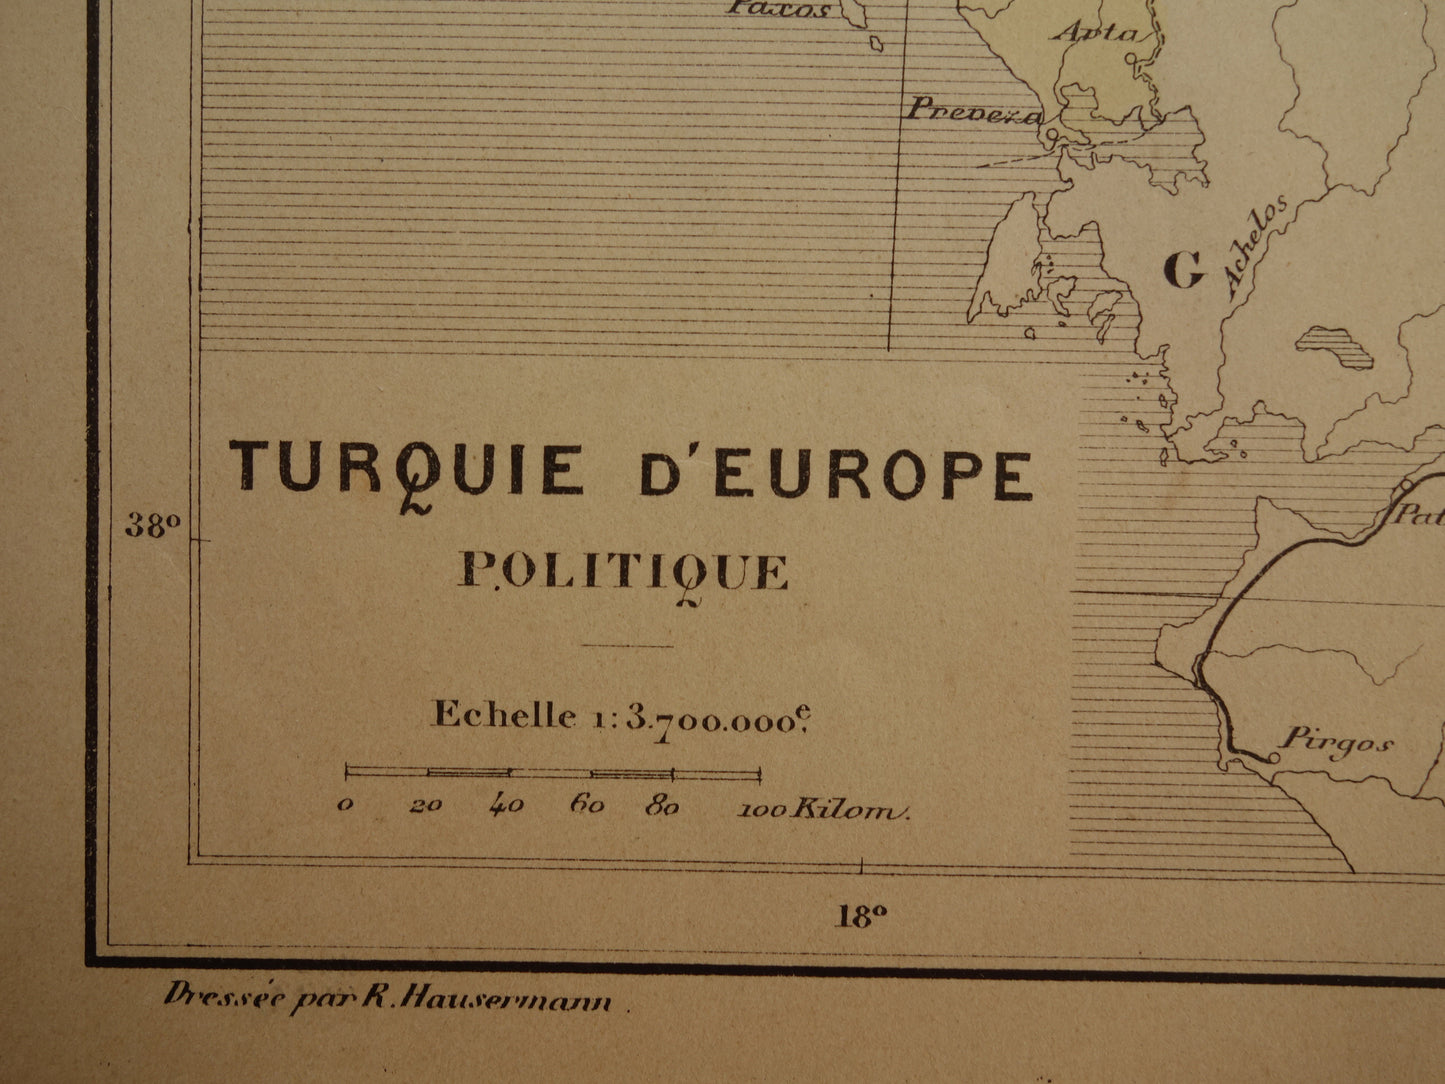 Turkije in Europa in 1896 kaart landkaart